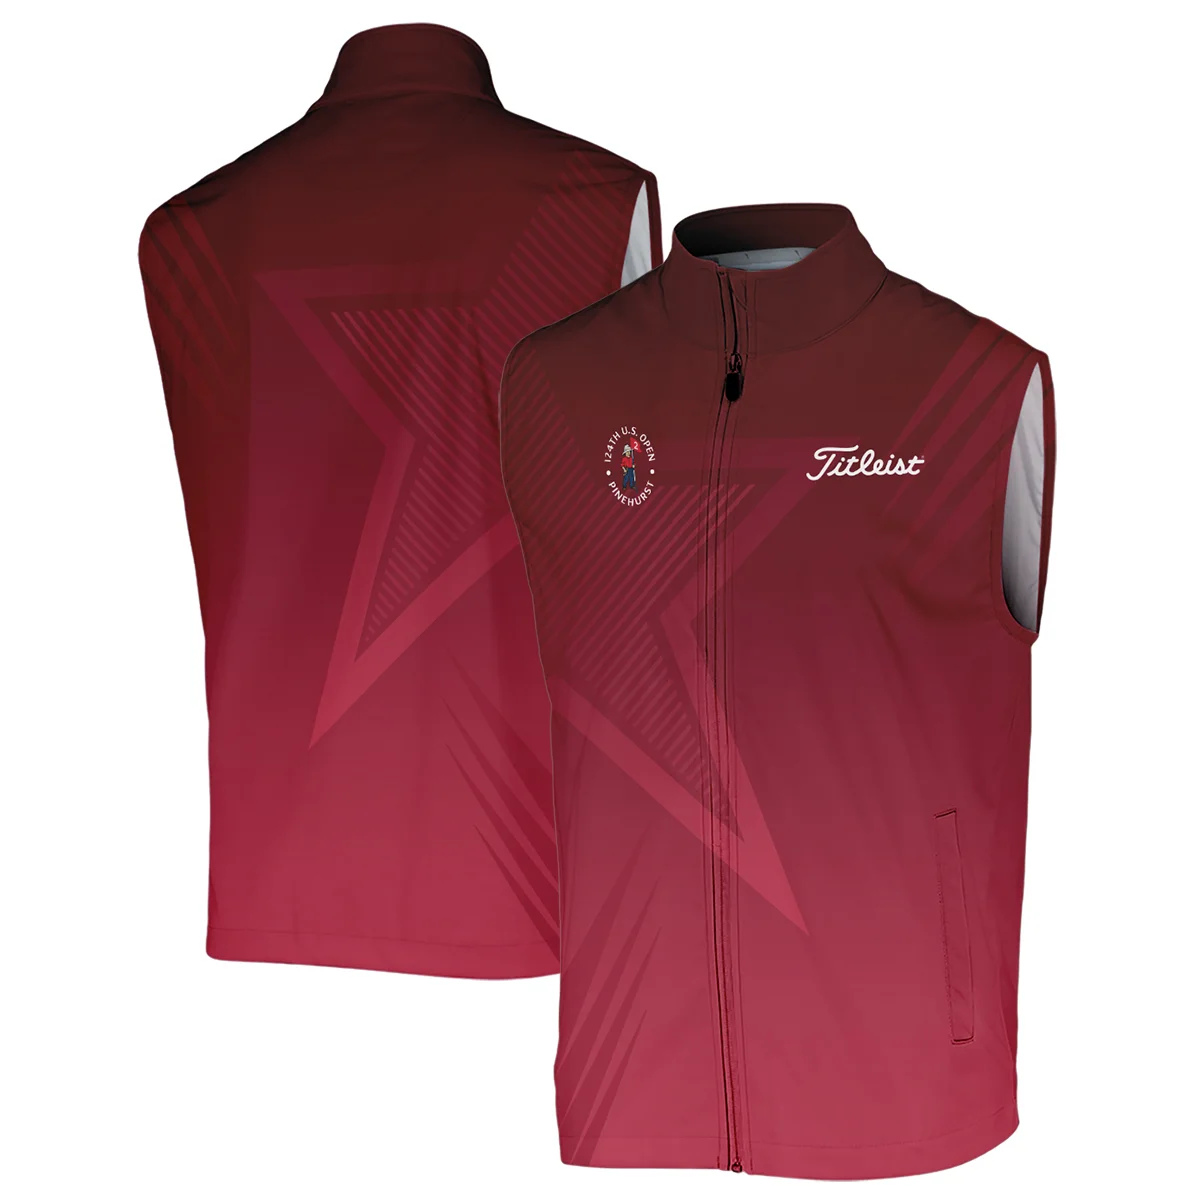 Titleist 124th U.S. Open Pinehurst Golf Sport Zipper Polo Shirt Star Gradient Red Straight Pattern Zipper Polo Shirt For Men